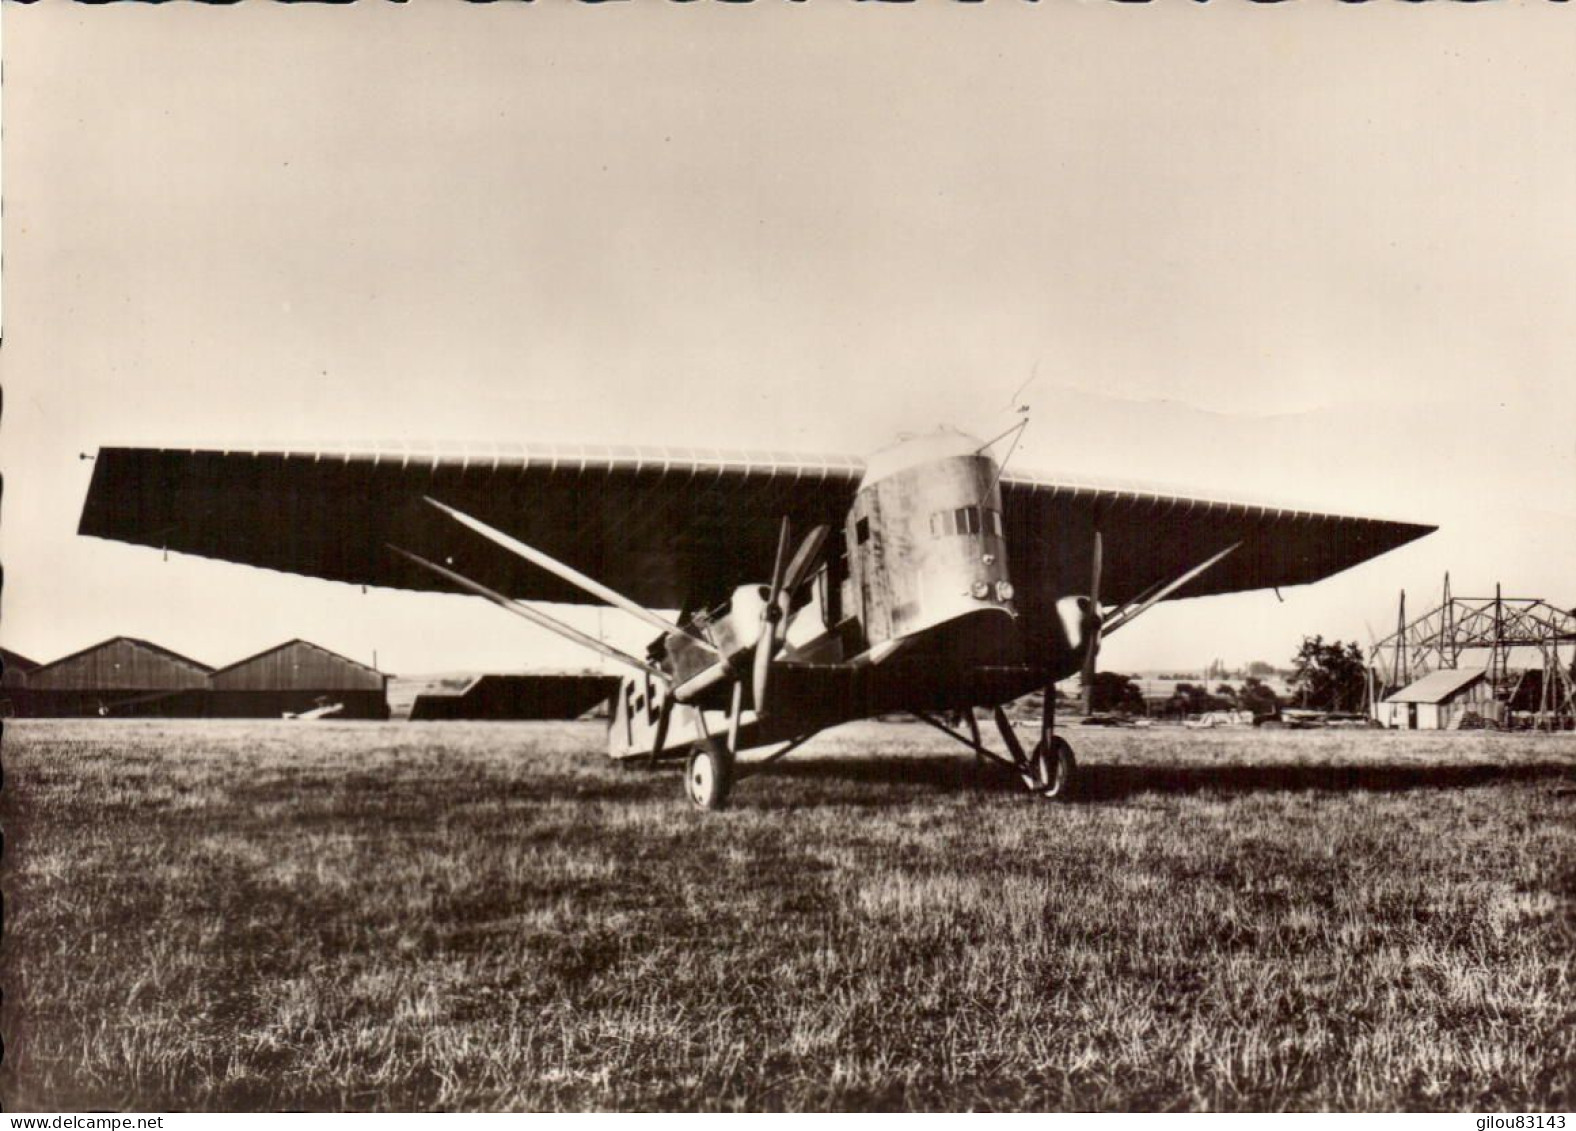 Aviation, Association des Amis du Musee de l Air, lot de 38 cartes (cpsm)